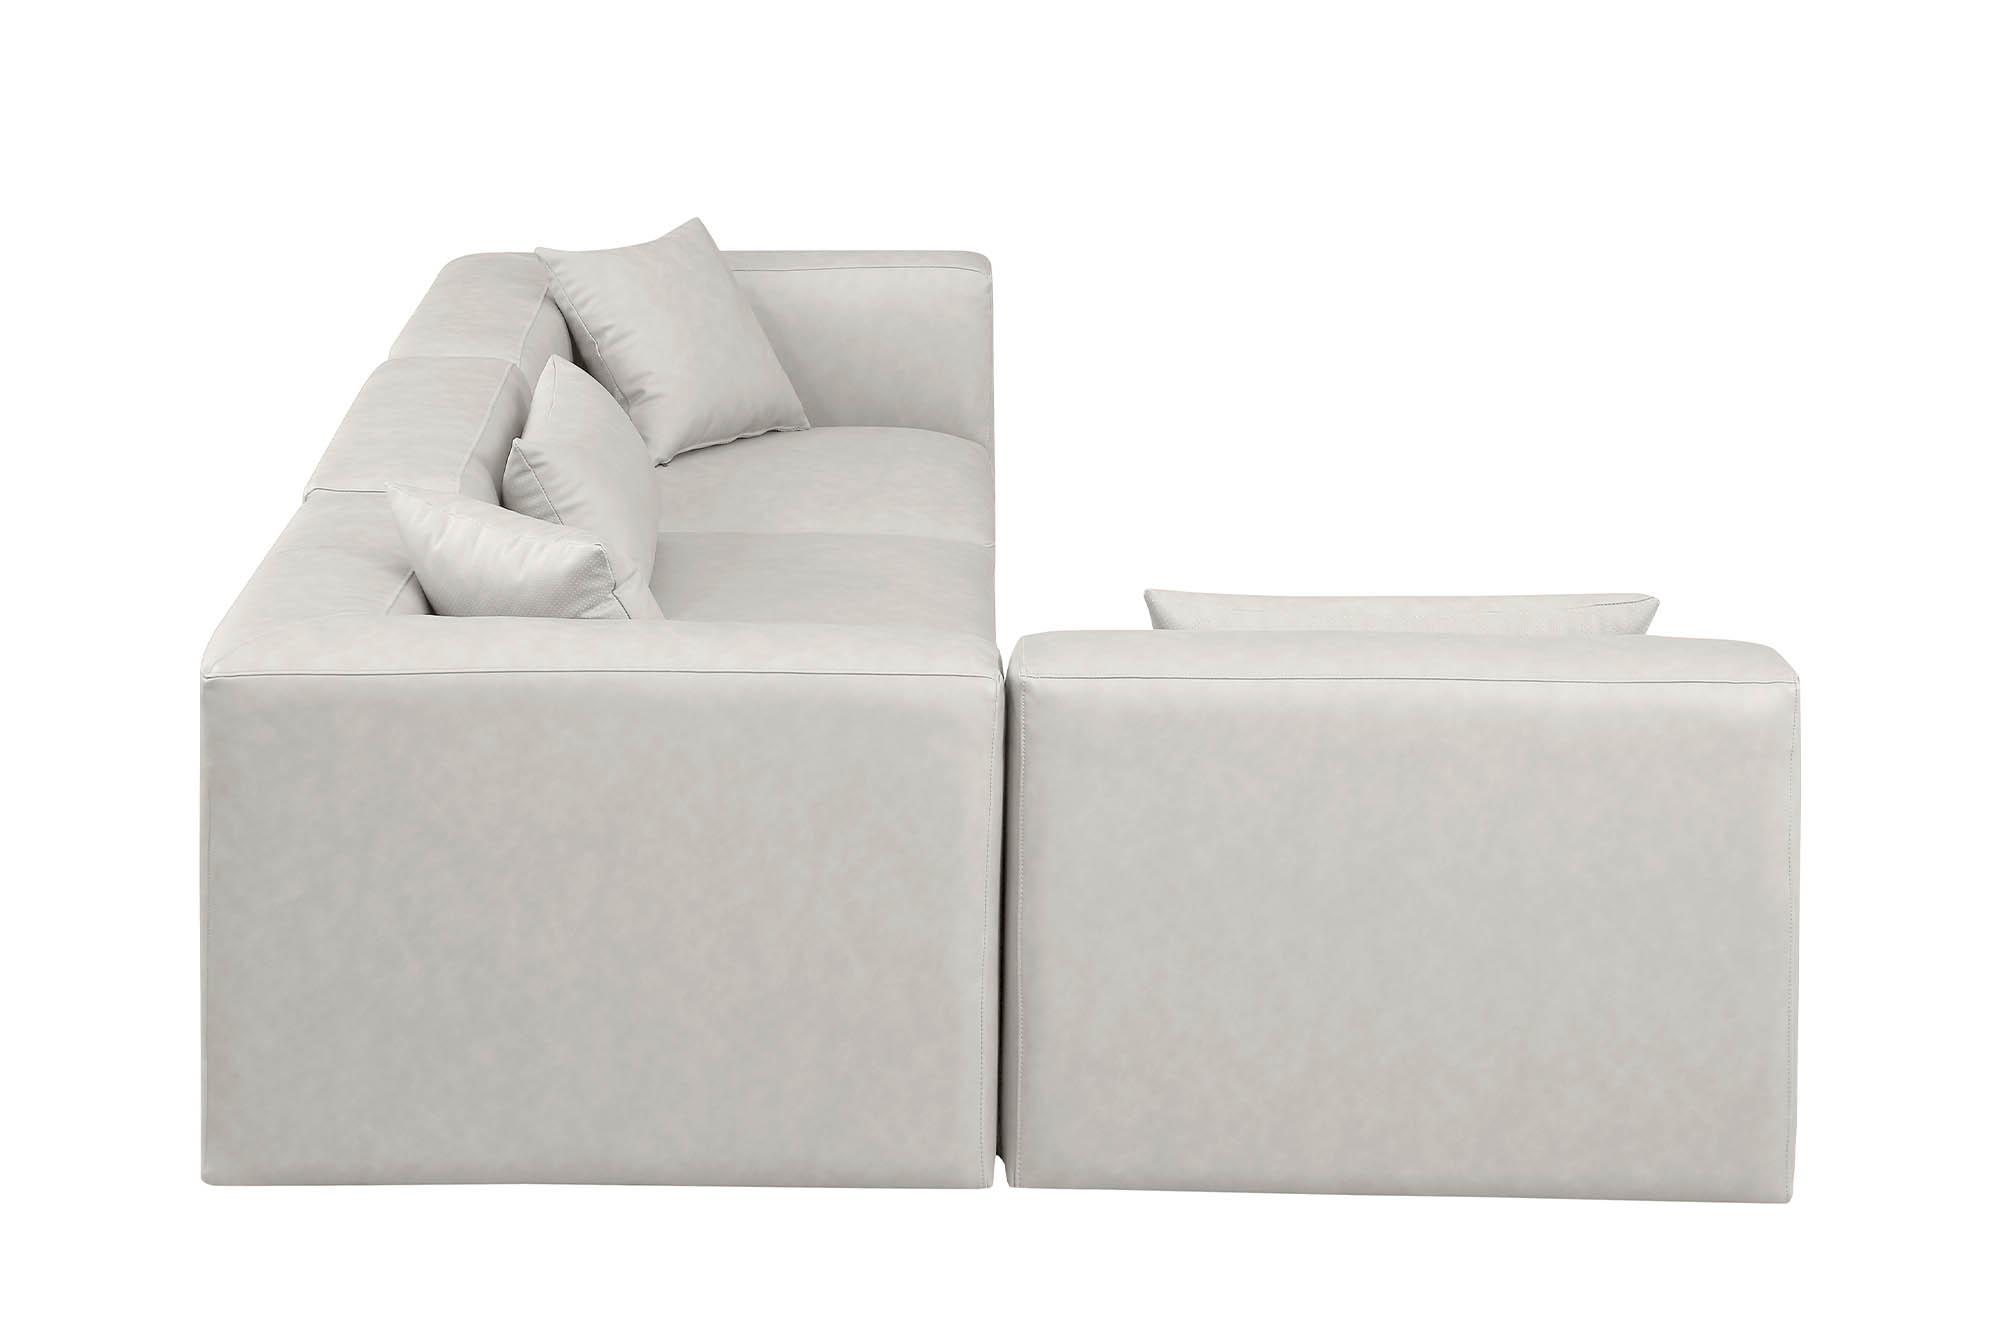 

    
Meridian Furniture CUBE 668Cream-Sec4B Modular Sectional Sofa Cream 668Cream-Sec4B
